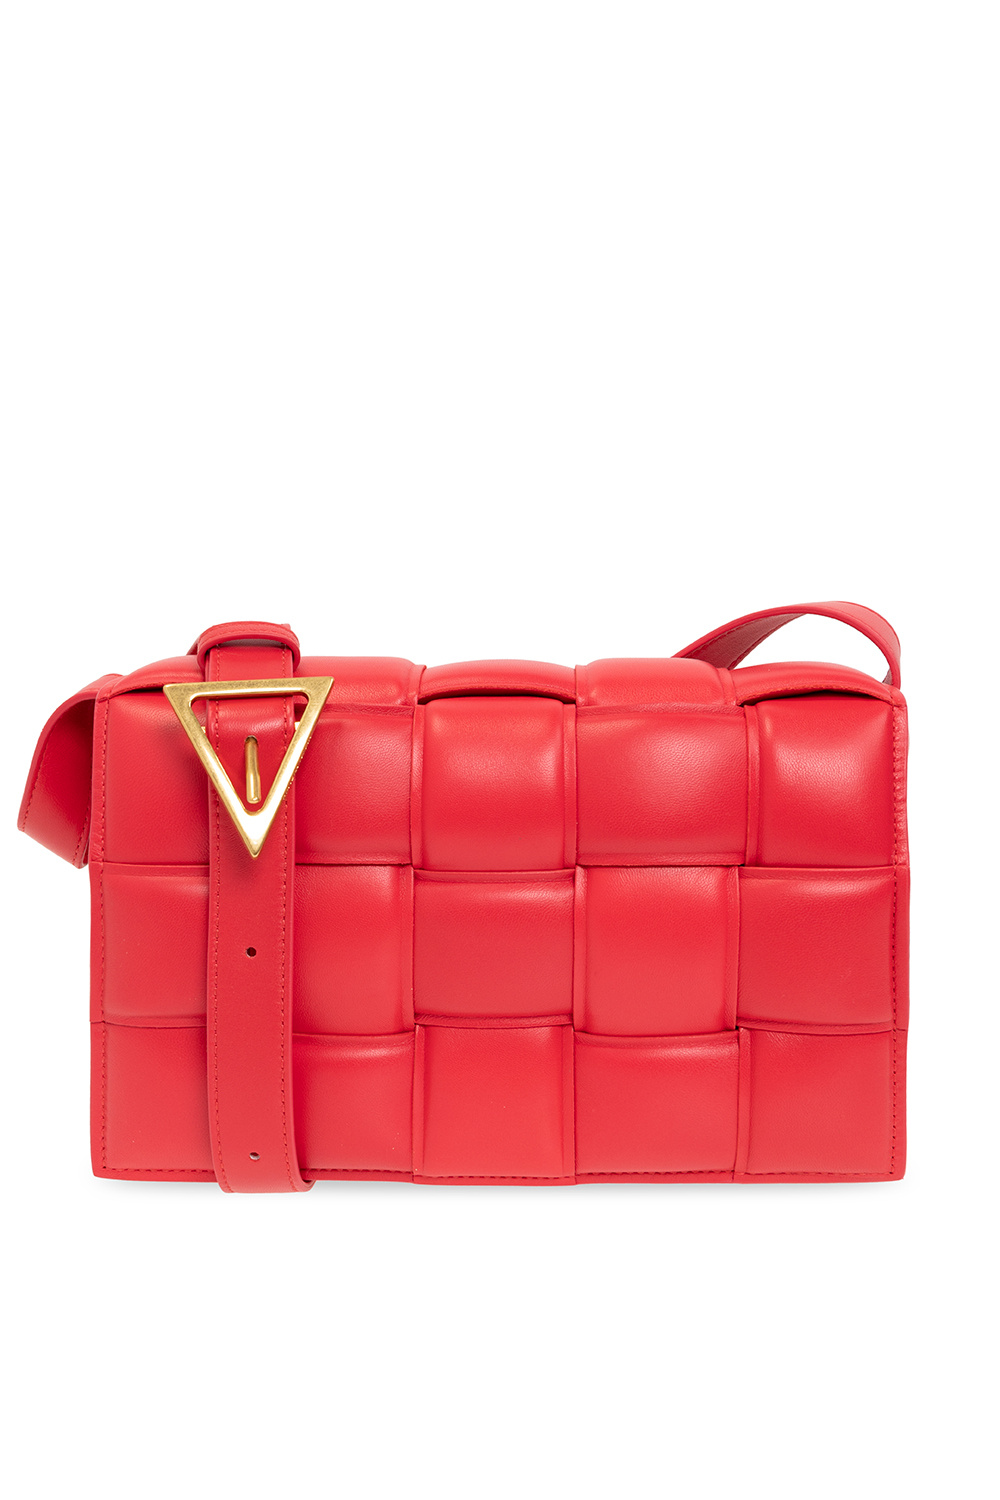 bottega cardigan Veneta ‘Padded Cassette Small’ shoulder bag